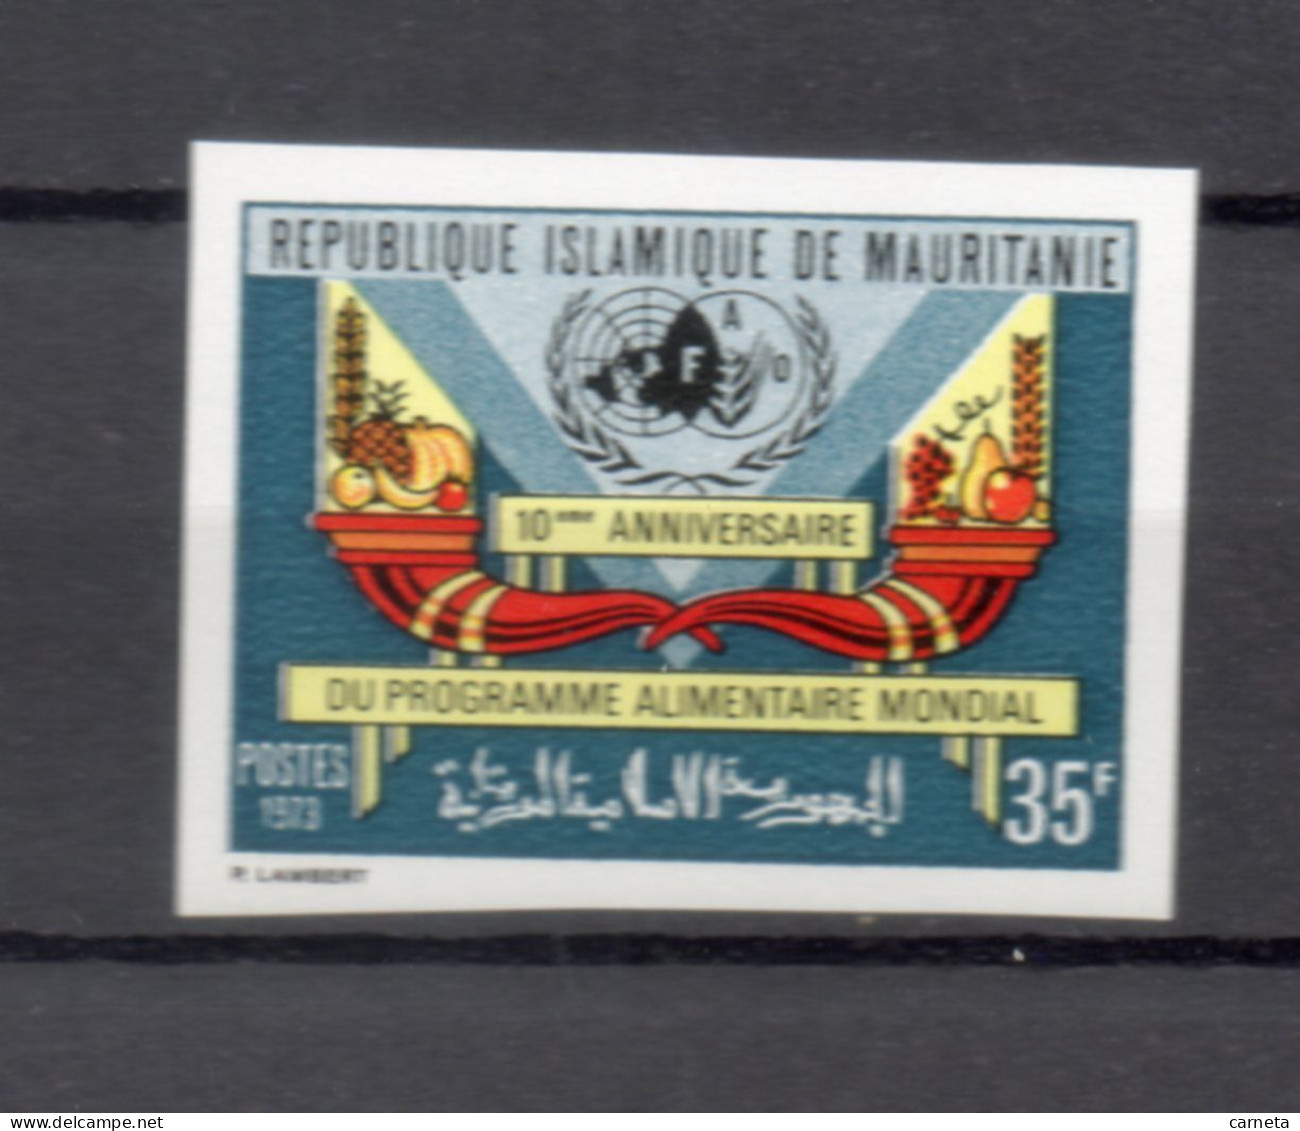 MAURITANIE    N° 306  NON DENTELE    NEUF SANS CHARNIERE   COTE ? €    PROGRAMME ALIMENTAIRE - Mauritanie (1960-...)